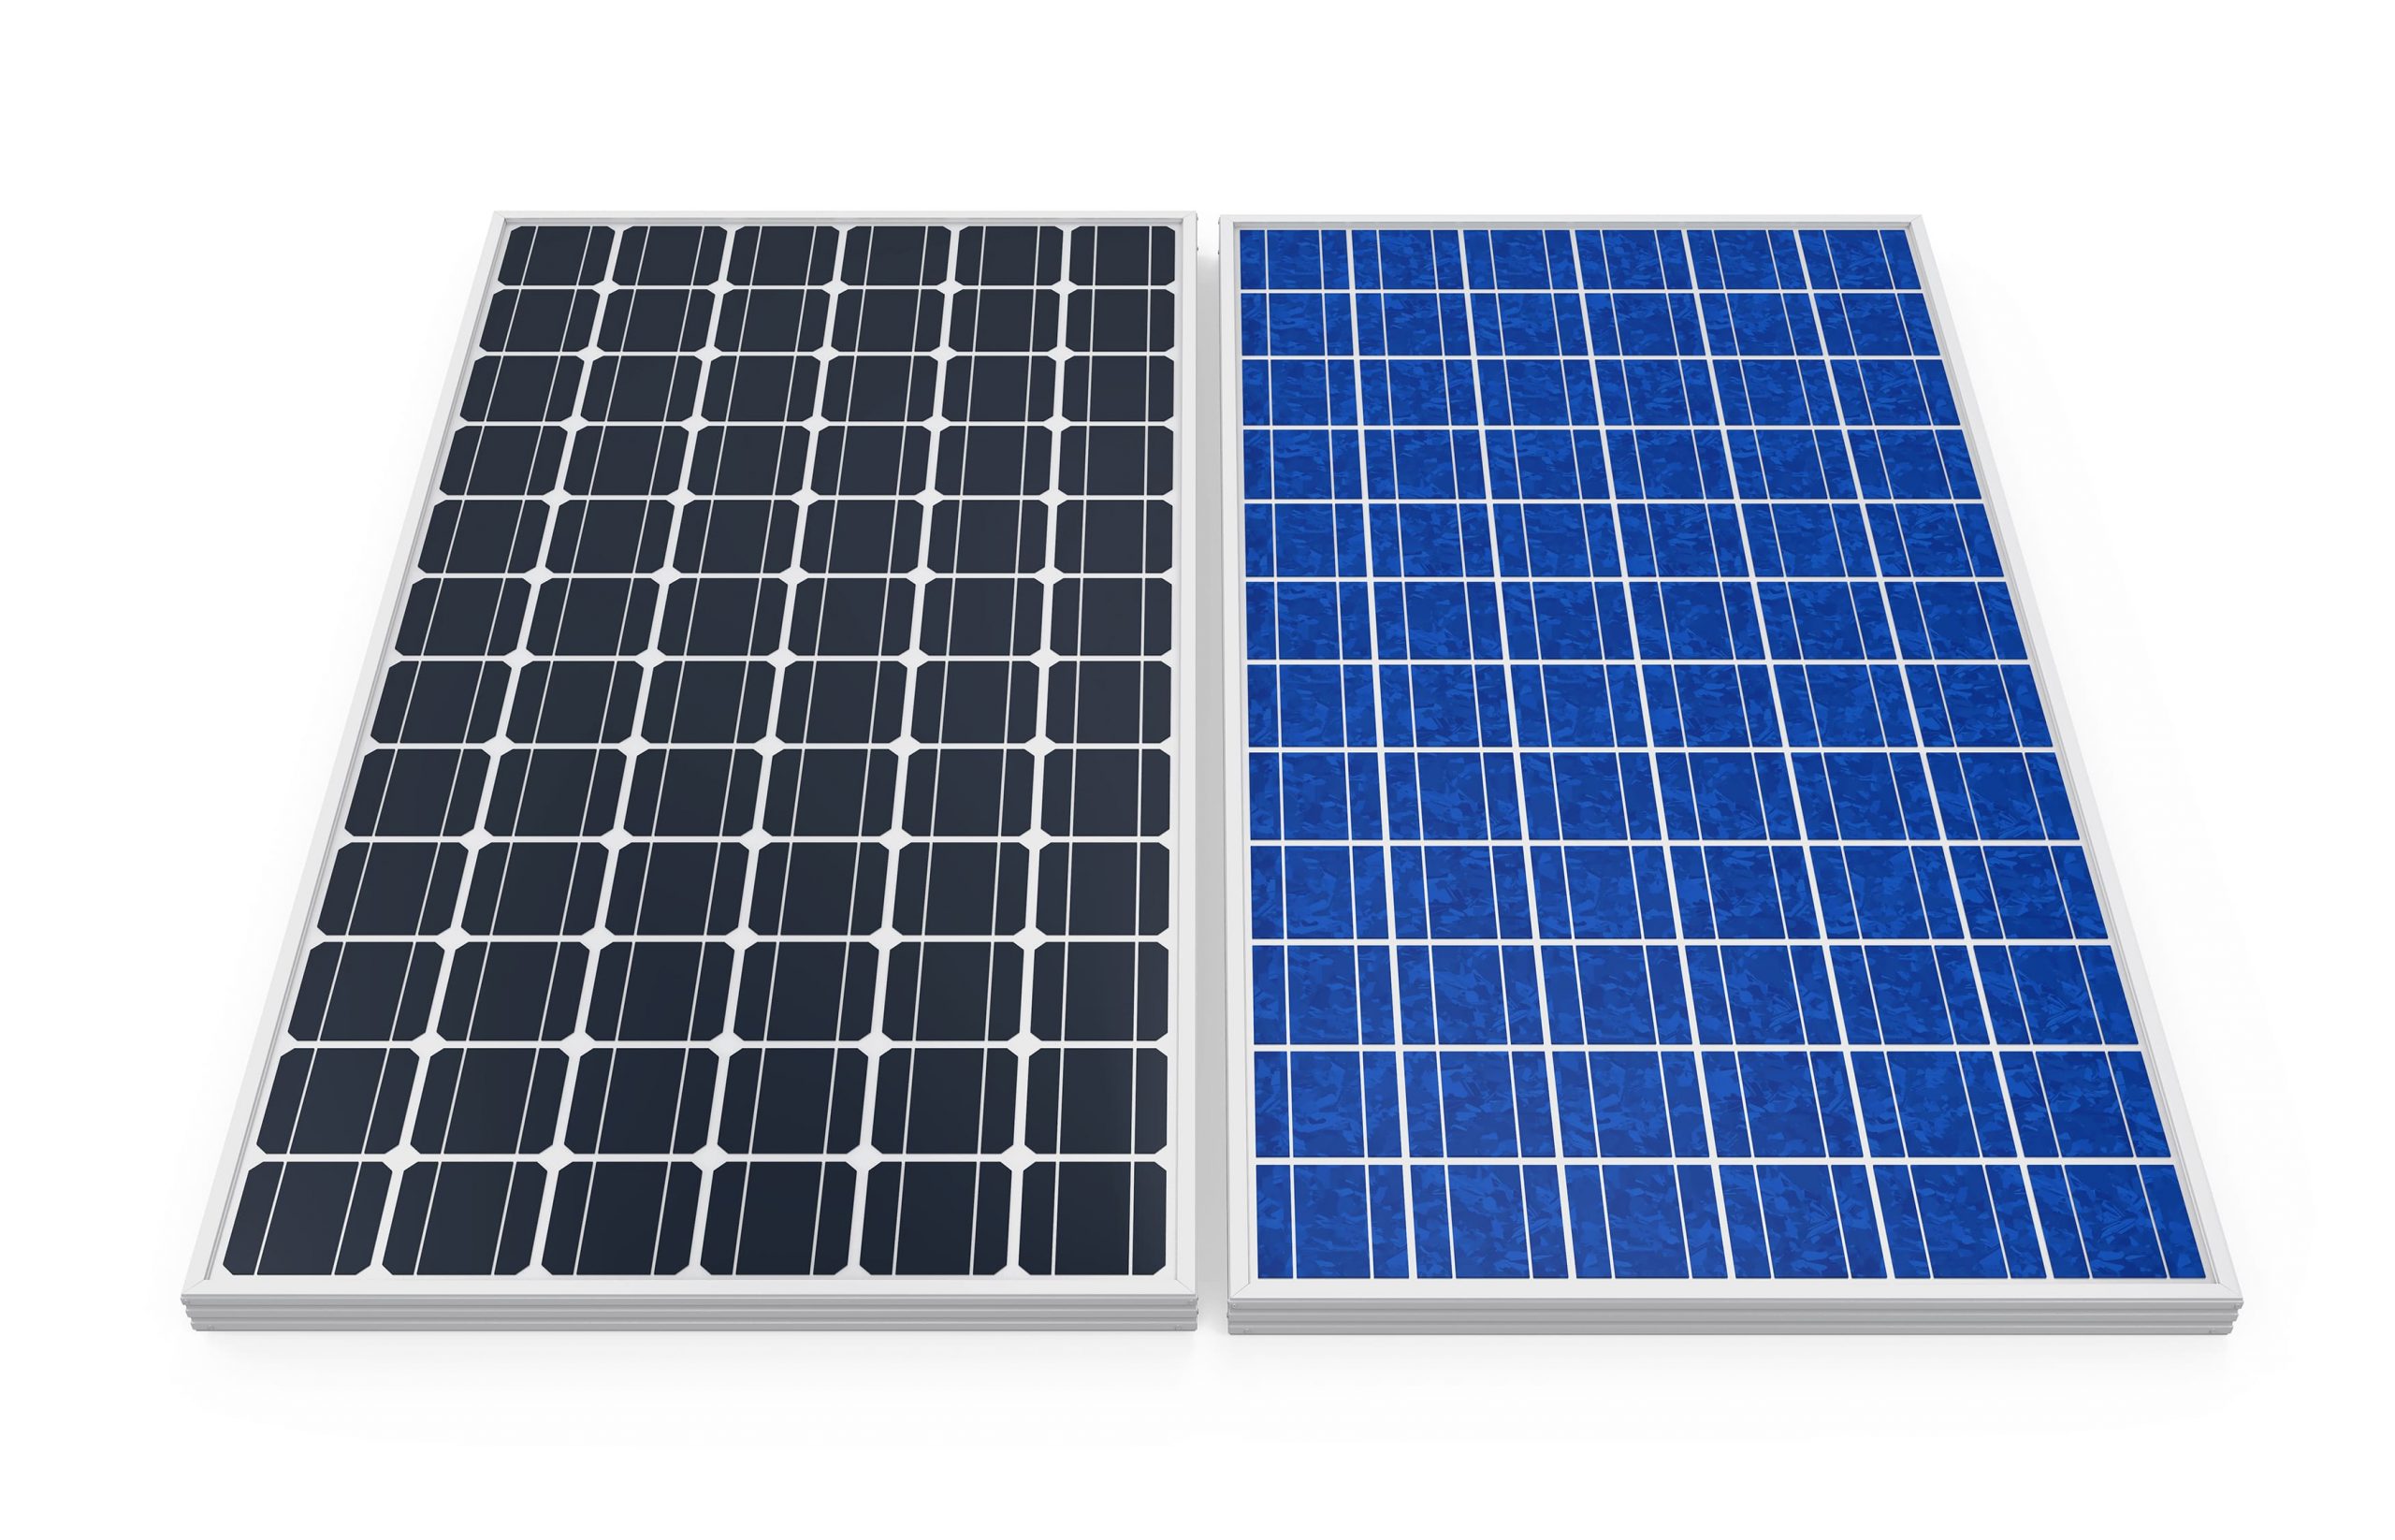 Monocrystalline vs Polycrystalline Solar Panels